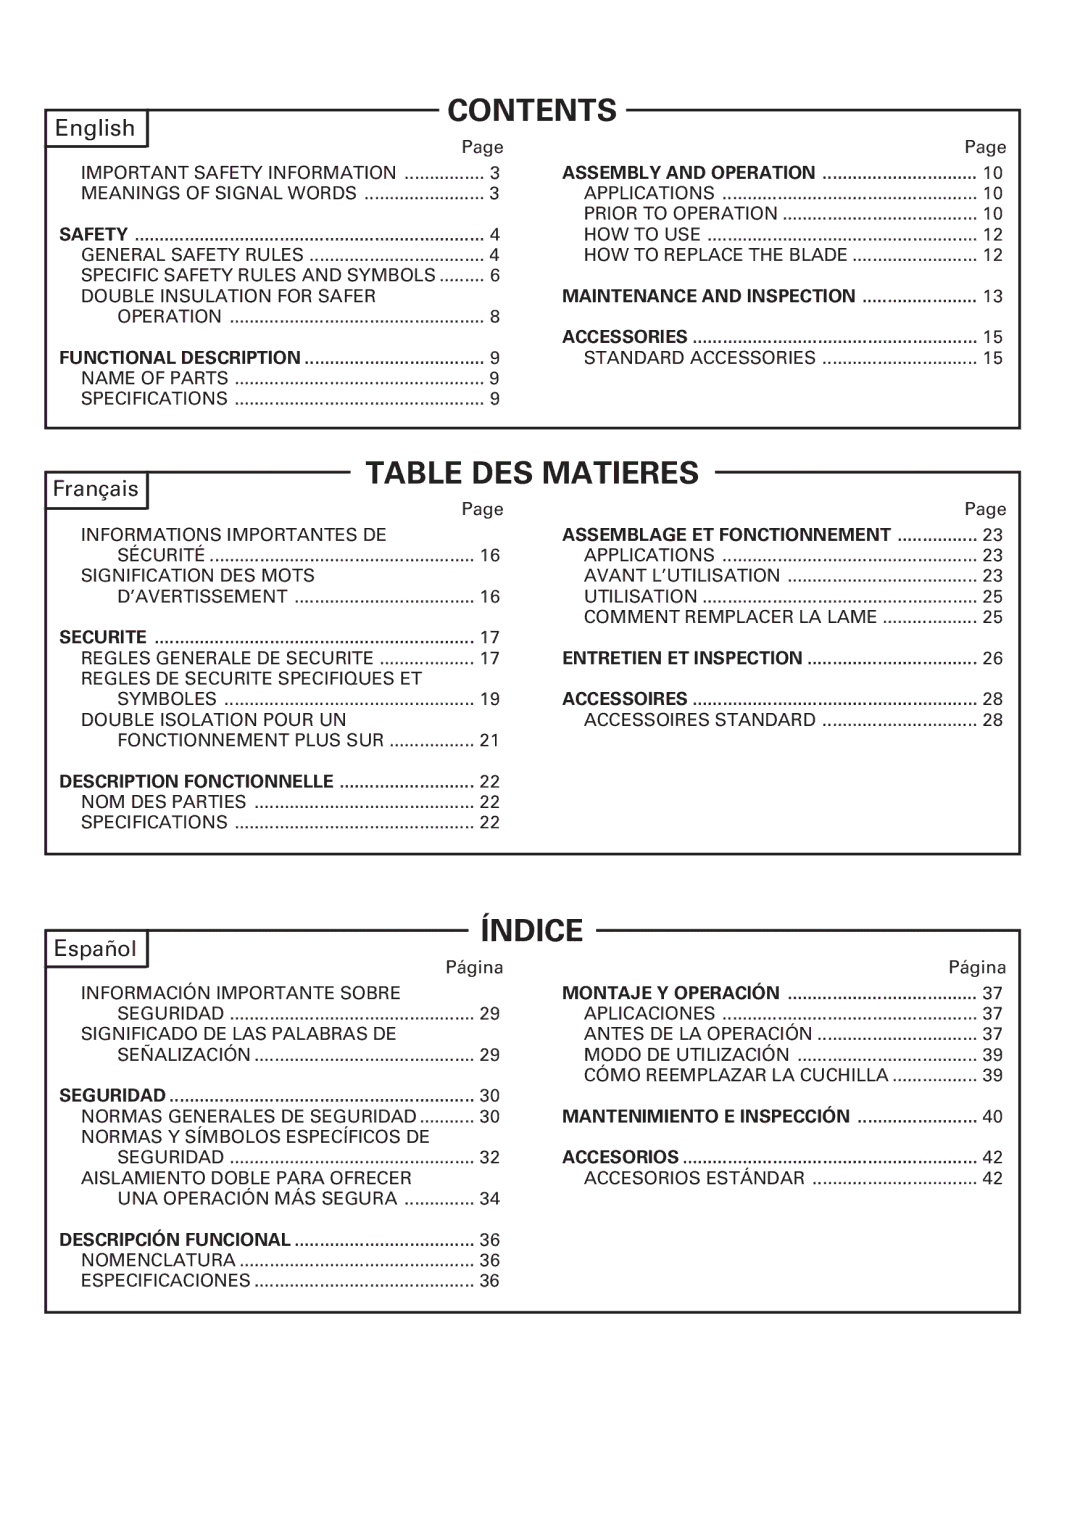 Hitachi CE 16SA instruction manual Contents, Table DES Matieres 